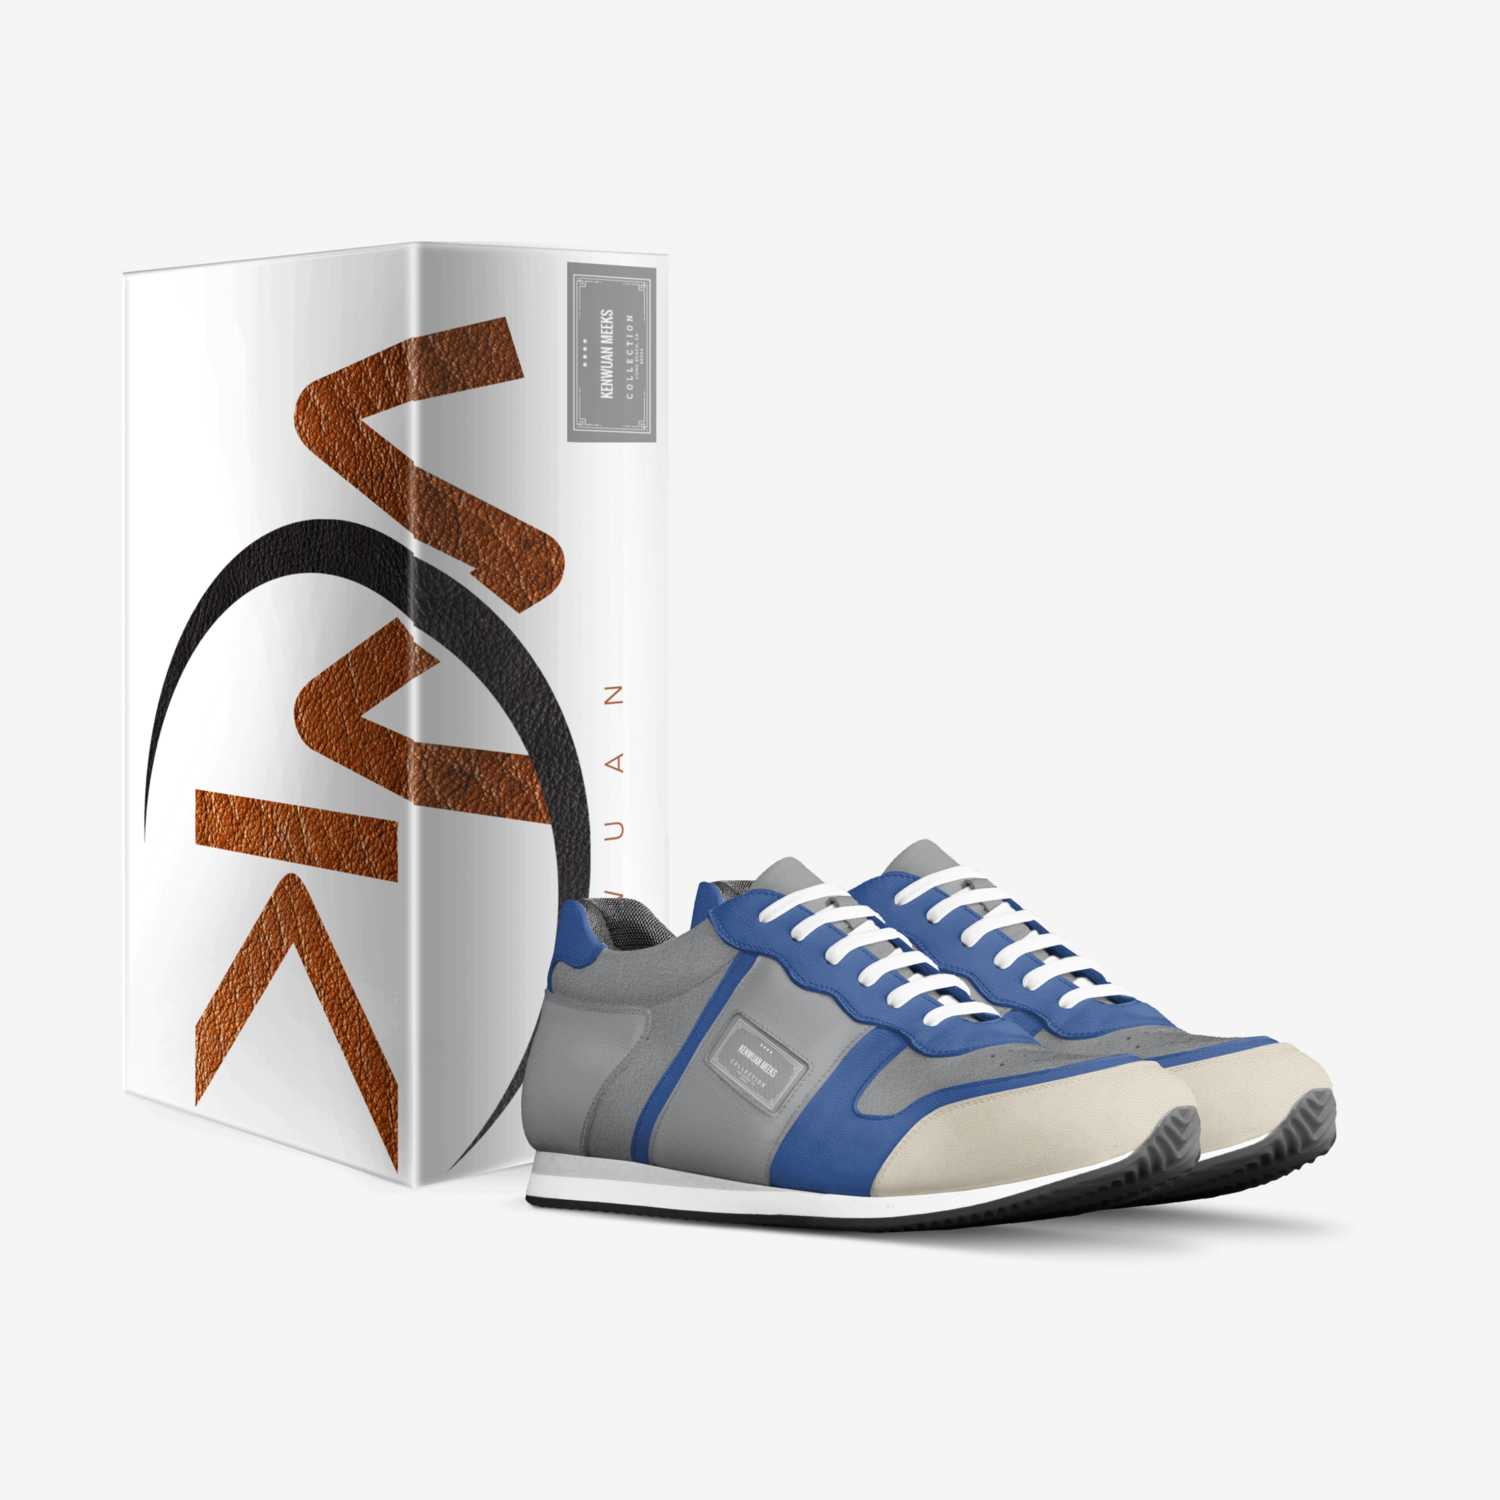 Kenwuan Meeks custom made in Italy shoes by Kenwuan Meeks | Box view